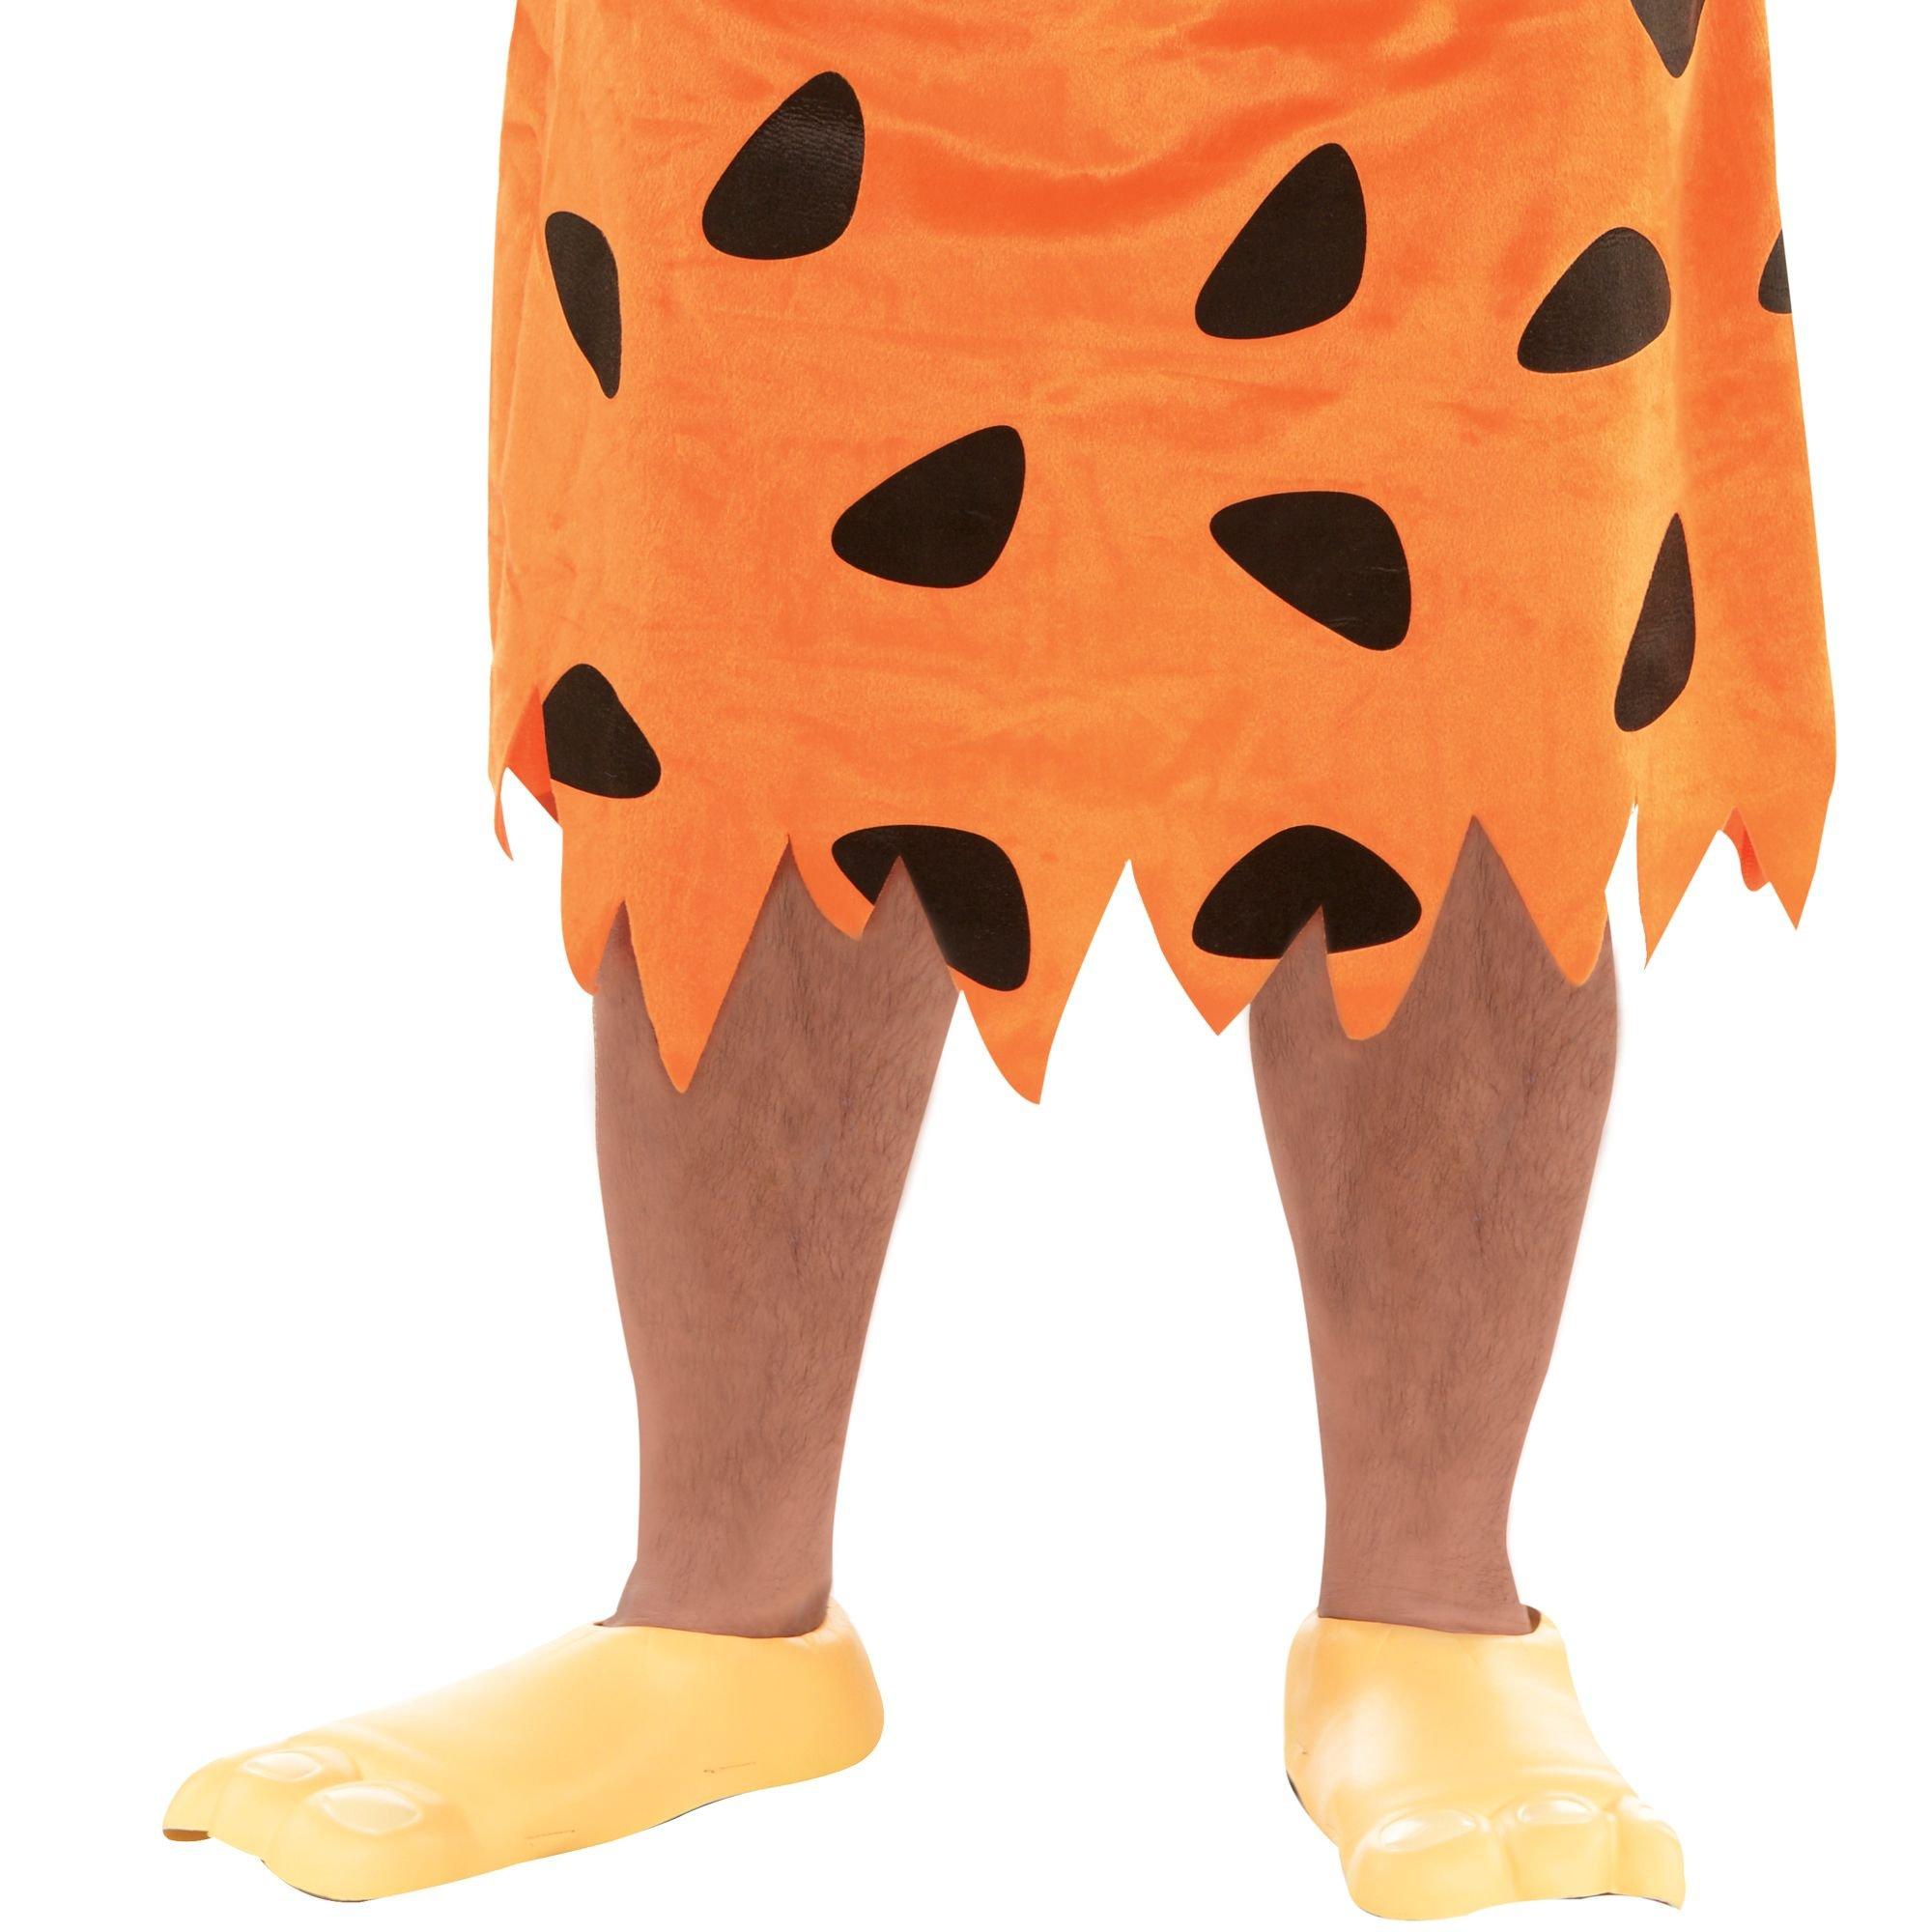 Adult Fred Flintstone Costume Plus Size - The Flintstones | Party City